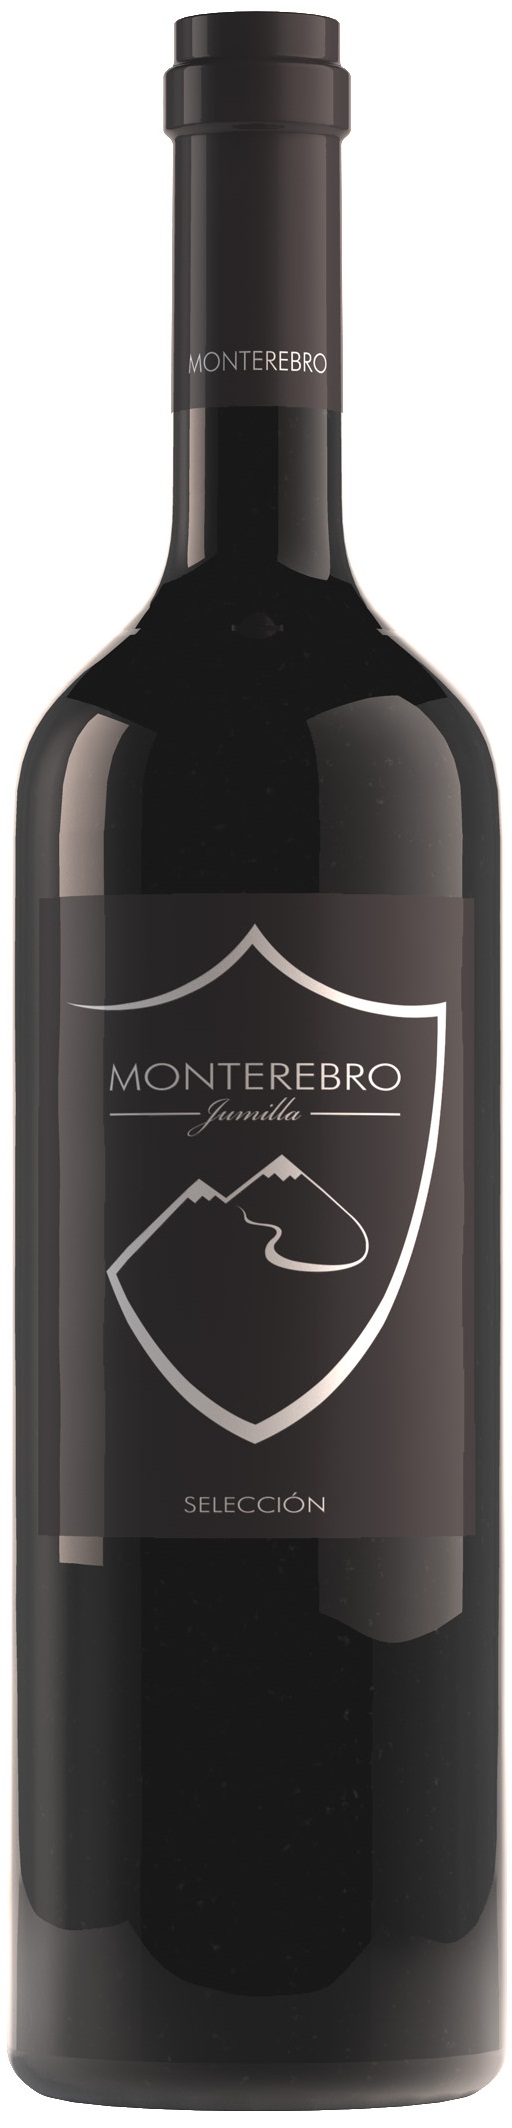 Imagen de la botella de Vino Monterebro Selección